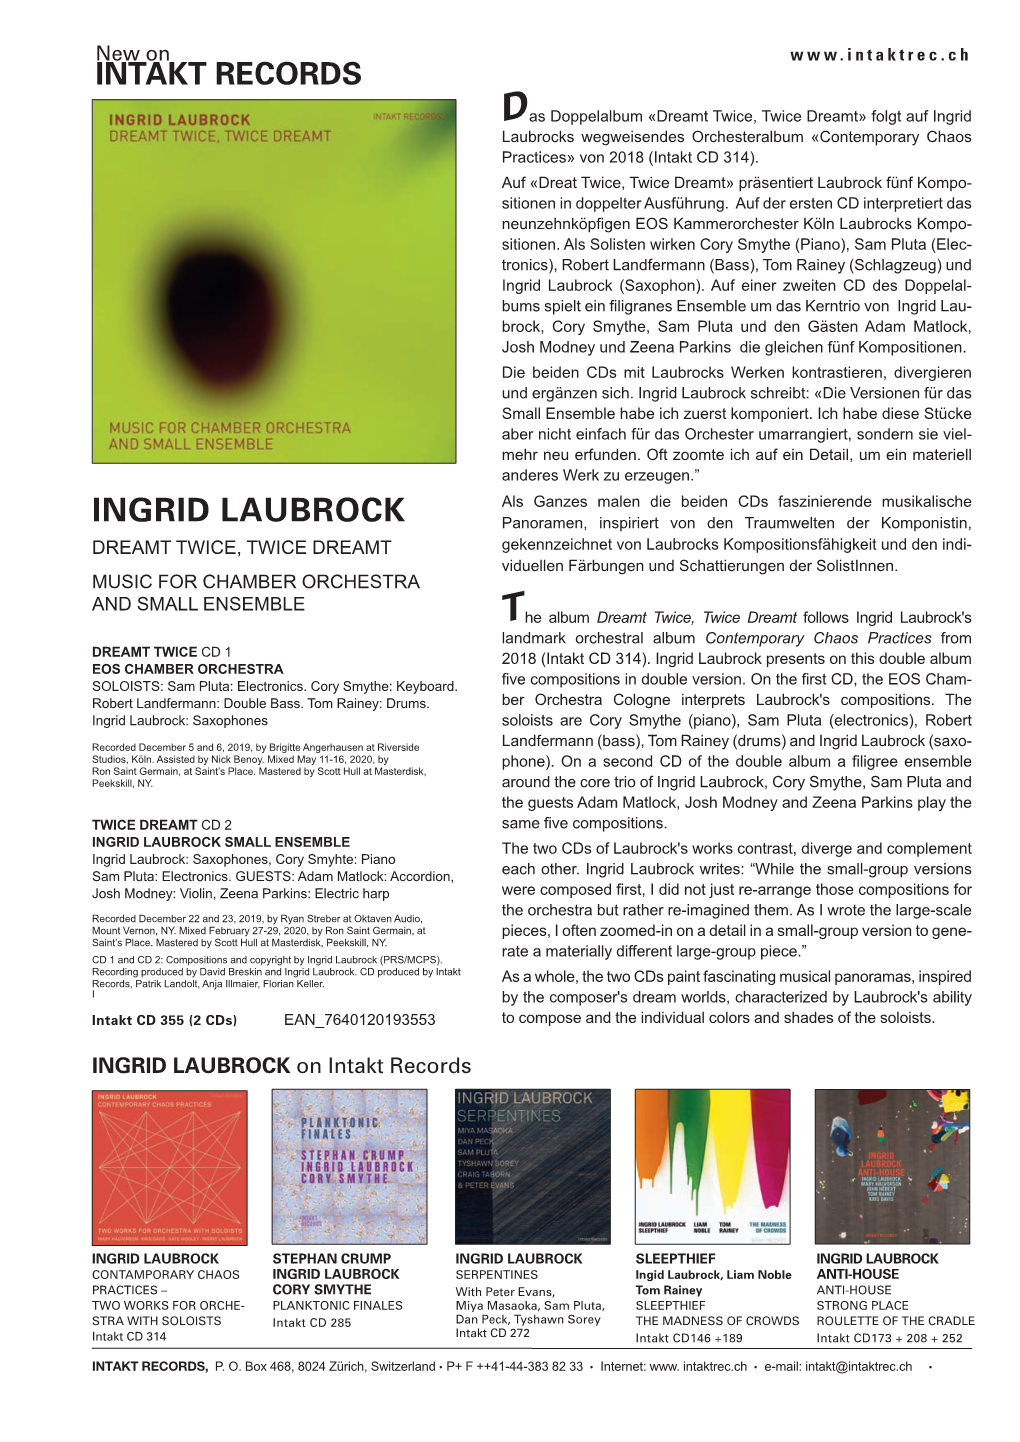 Ingrid Laubrocks Wegweisendes Orchesteralbum «Contemporary Chaos Practices» Von 2018 (Intakt CD 314)